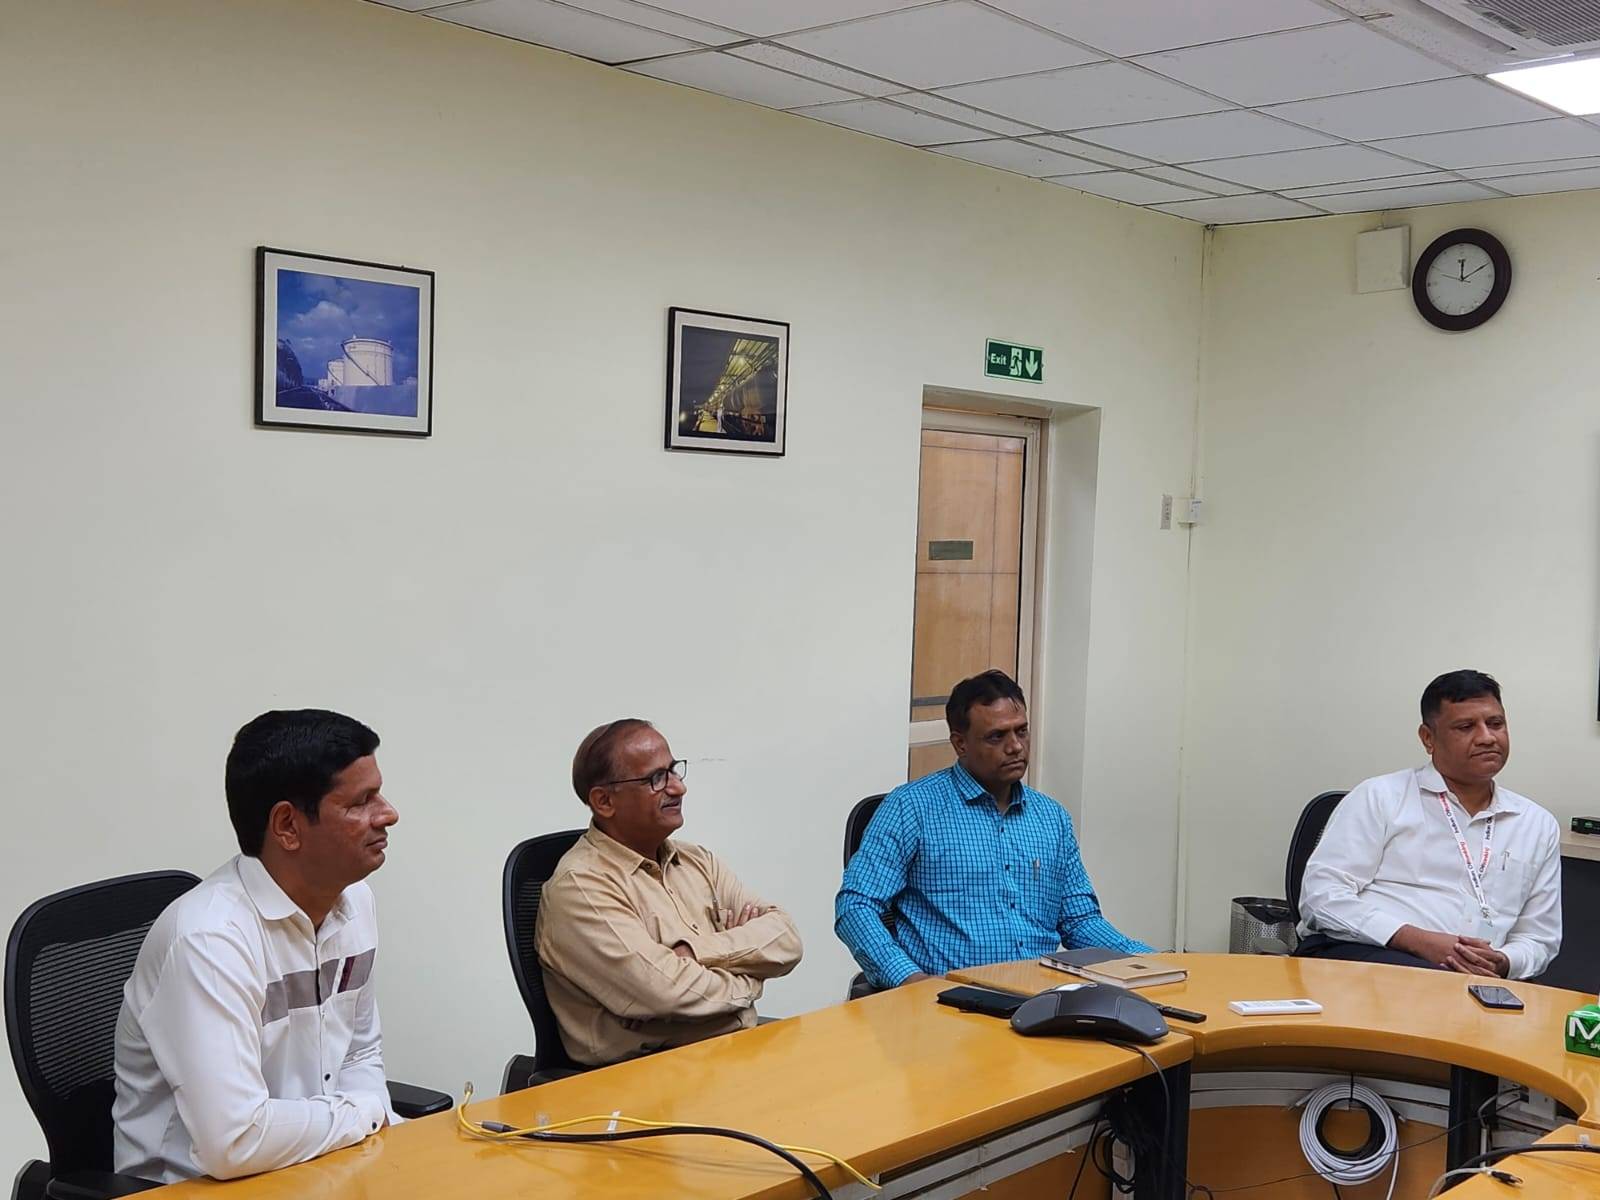 इंडियन ऑईल टॅंकिंग (IOTL) व्यवस्थापना बरोबर कामगार नेते, रायगड जिल्हा अध्यक्ष महेंद्रशेठ घरत यांची कामगारांच्या विविध प्रश्नांवर चर्चा